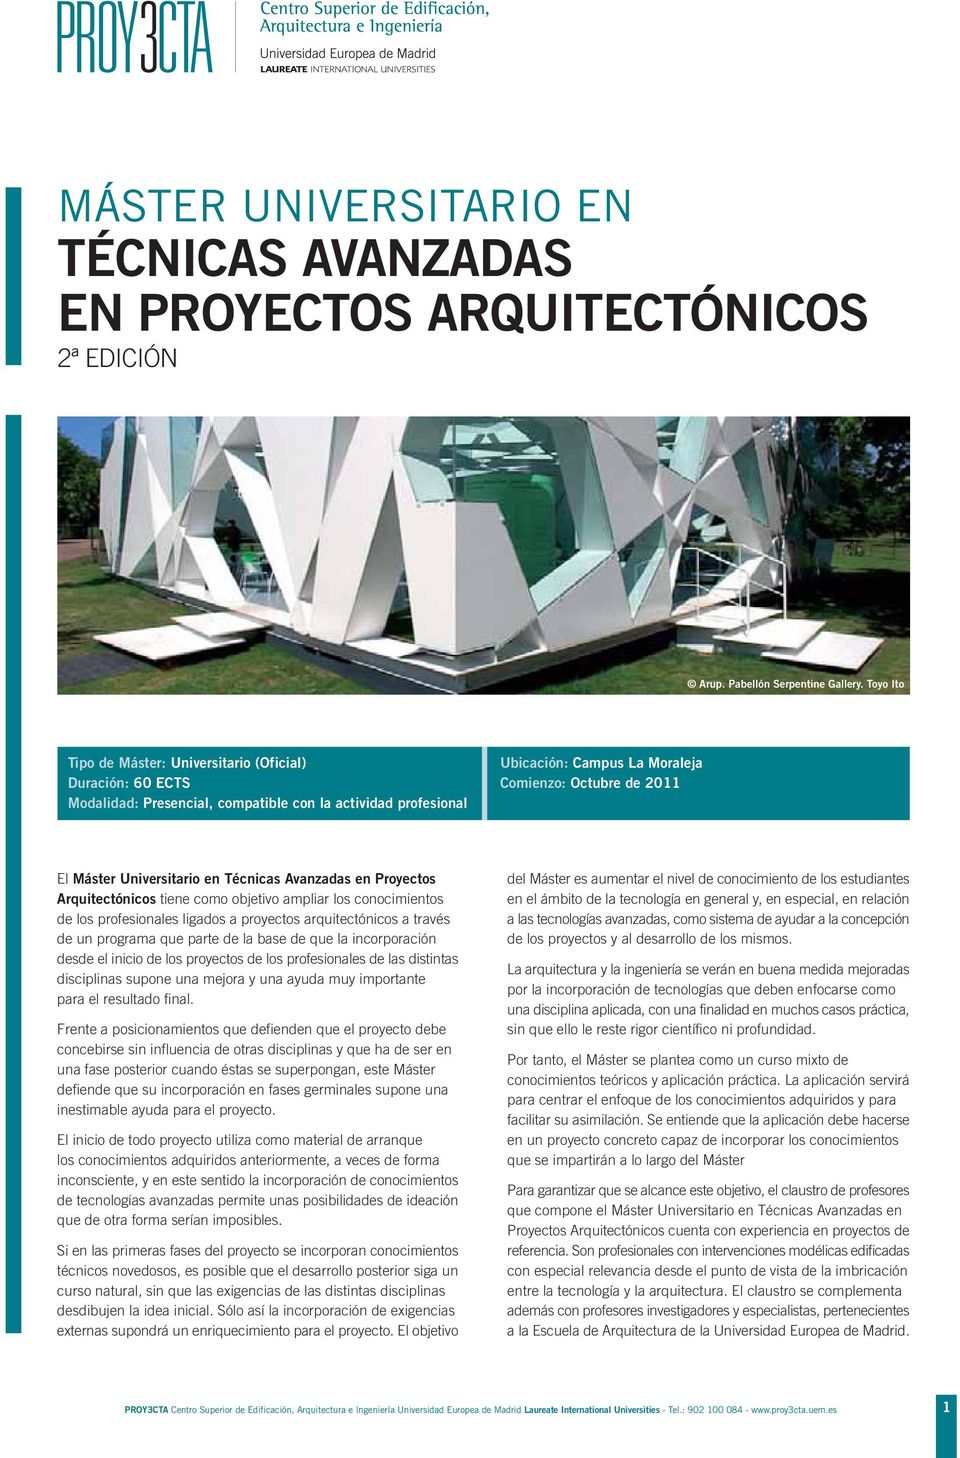 Universitario en Técnicas Avanzadas en Proyectos Arquitectónicos tiene como objetivo ampliar los conocimientos de los profesionales ligados a proyectos arquitectónicos a través de un programa que